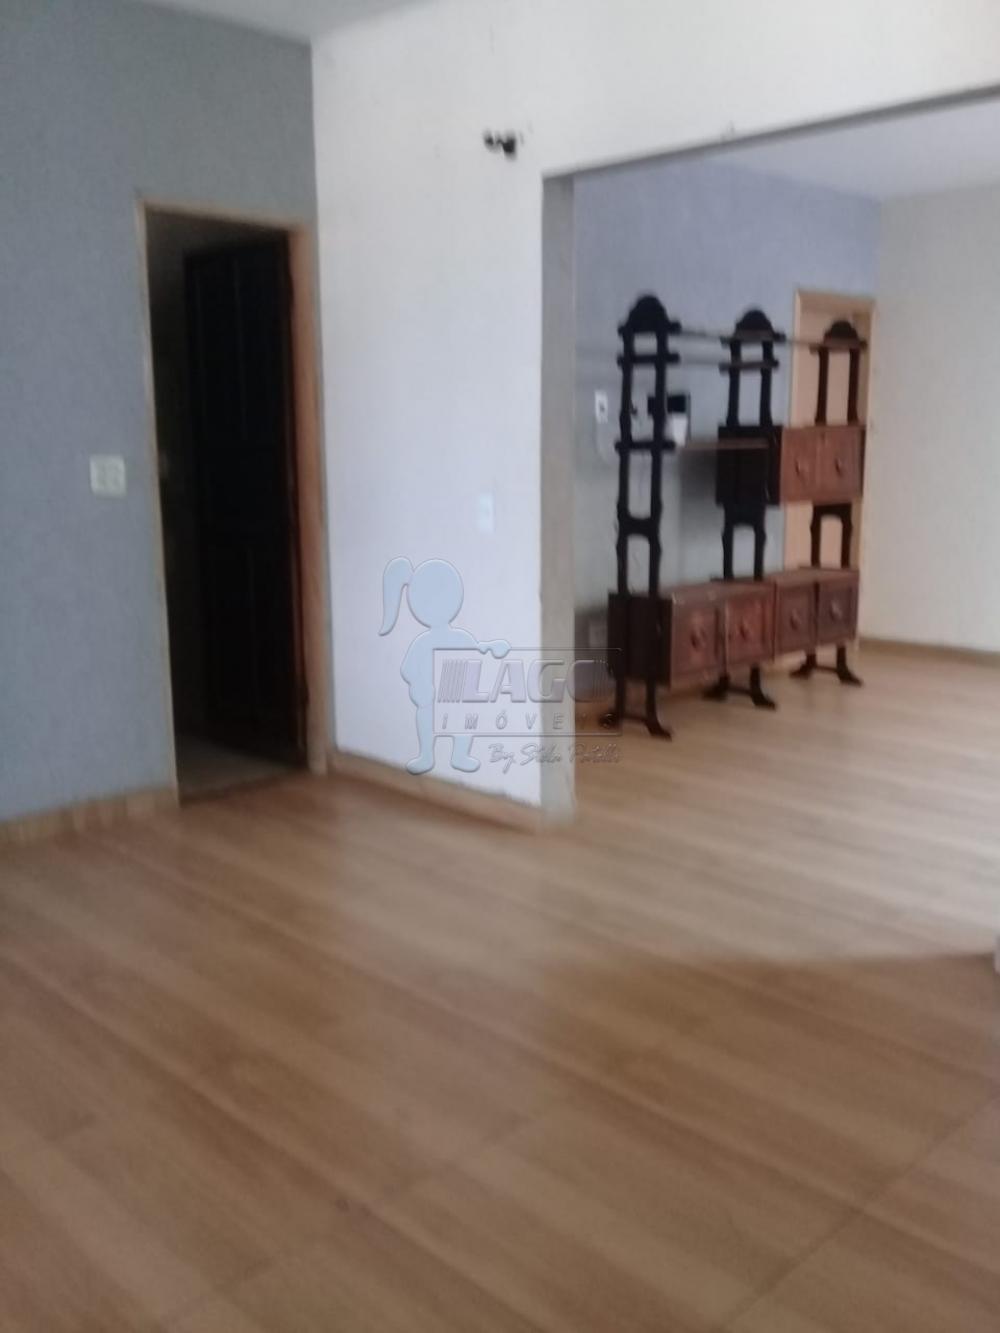 Comprar Casa / Padrão em Ribeirão Preto R$ 530.000,00 - Foto 6